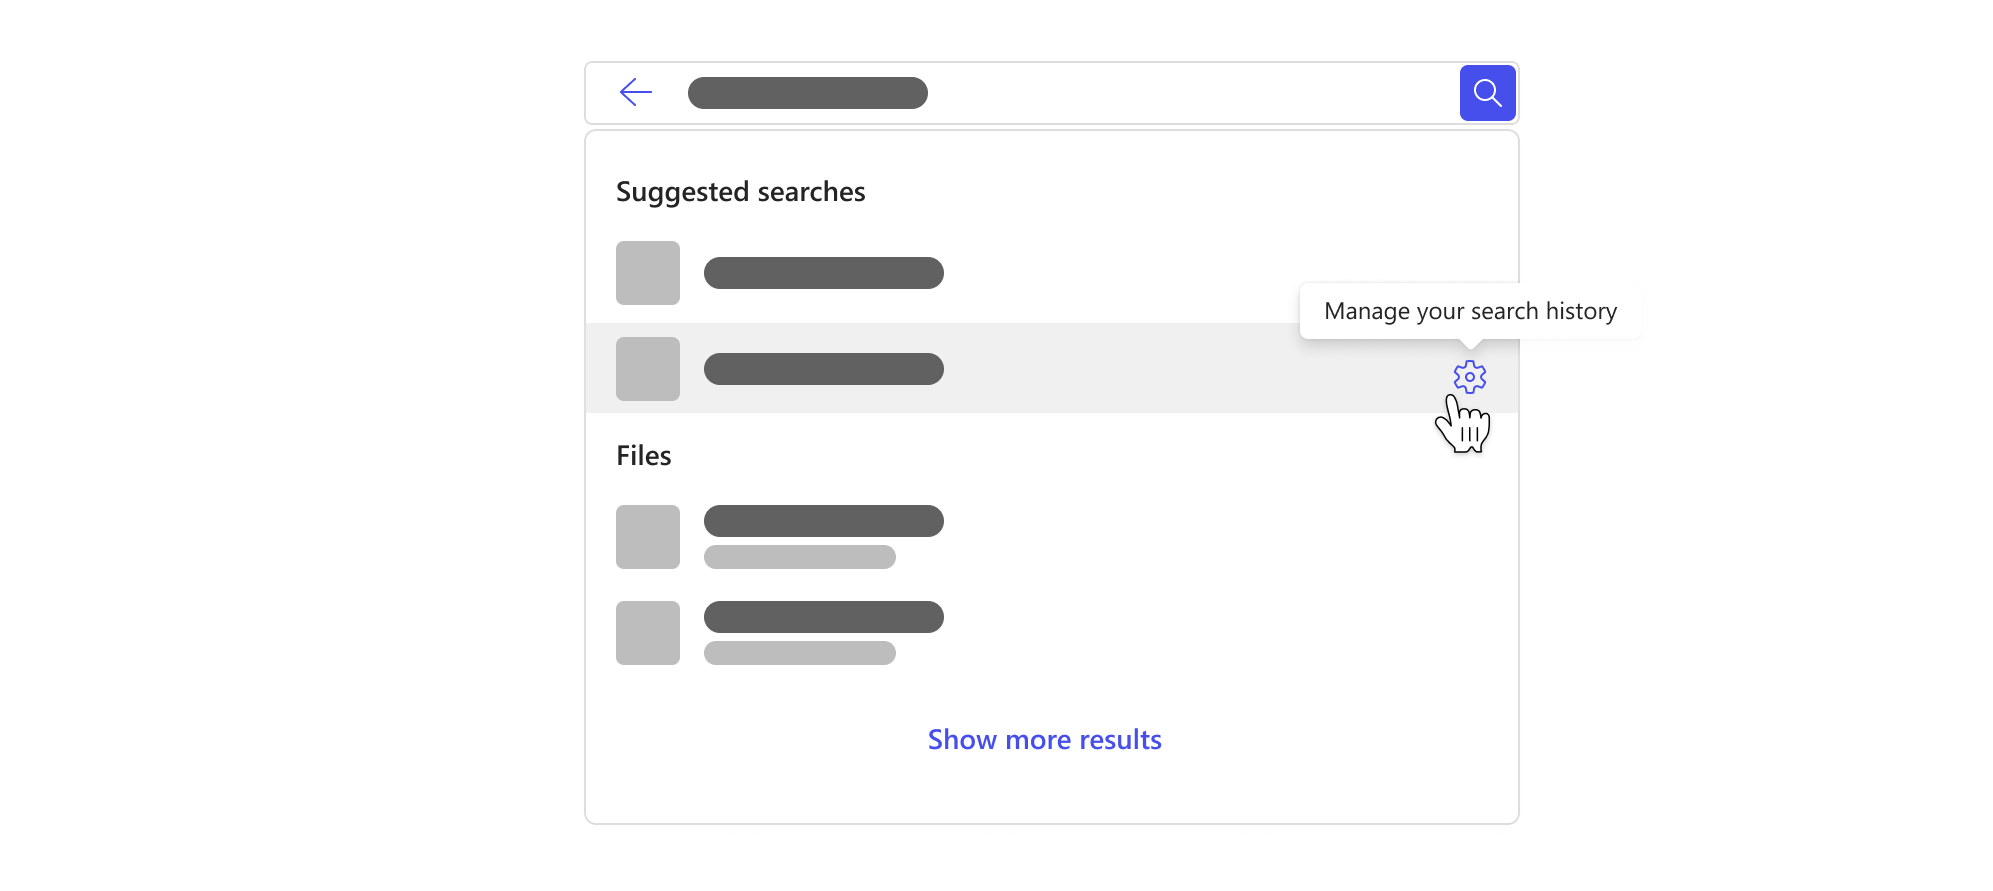 搜索框包含一个下拉列表，突出显示基于搜索历史记录的建议搜索以及用于管理搜索历史记录的按钮。